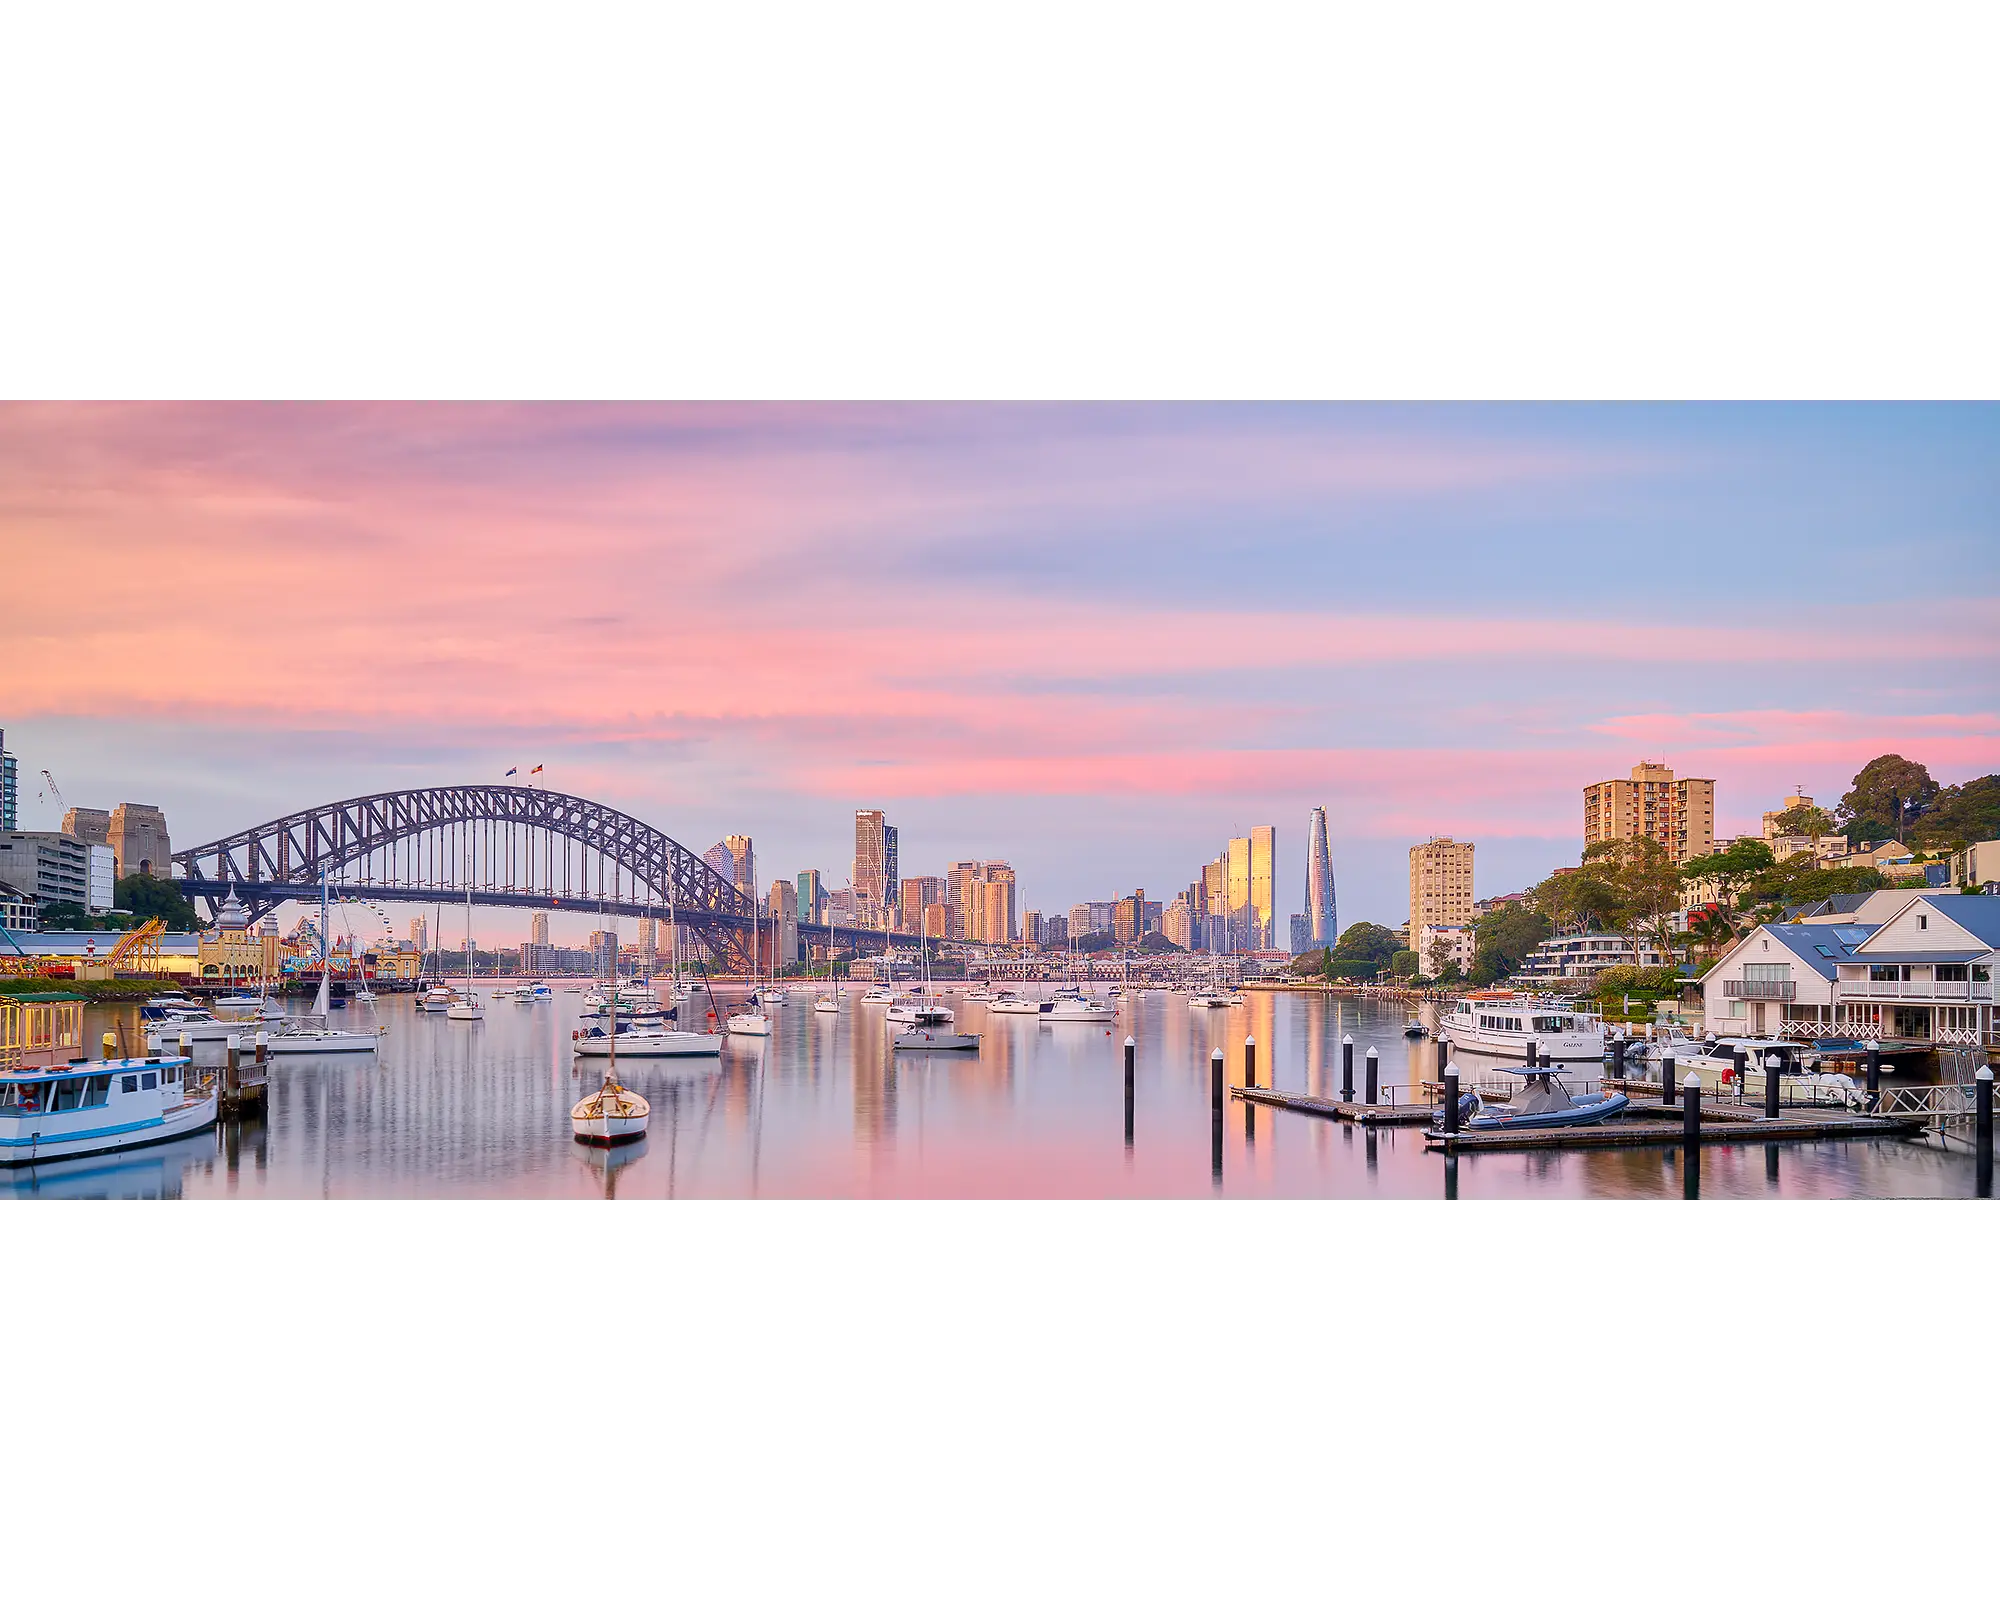 Pink sunrise over Sydney Harbour Bridge and Lavender Bay, Sydney.